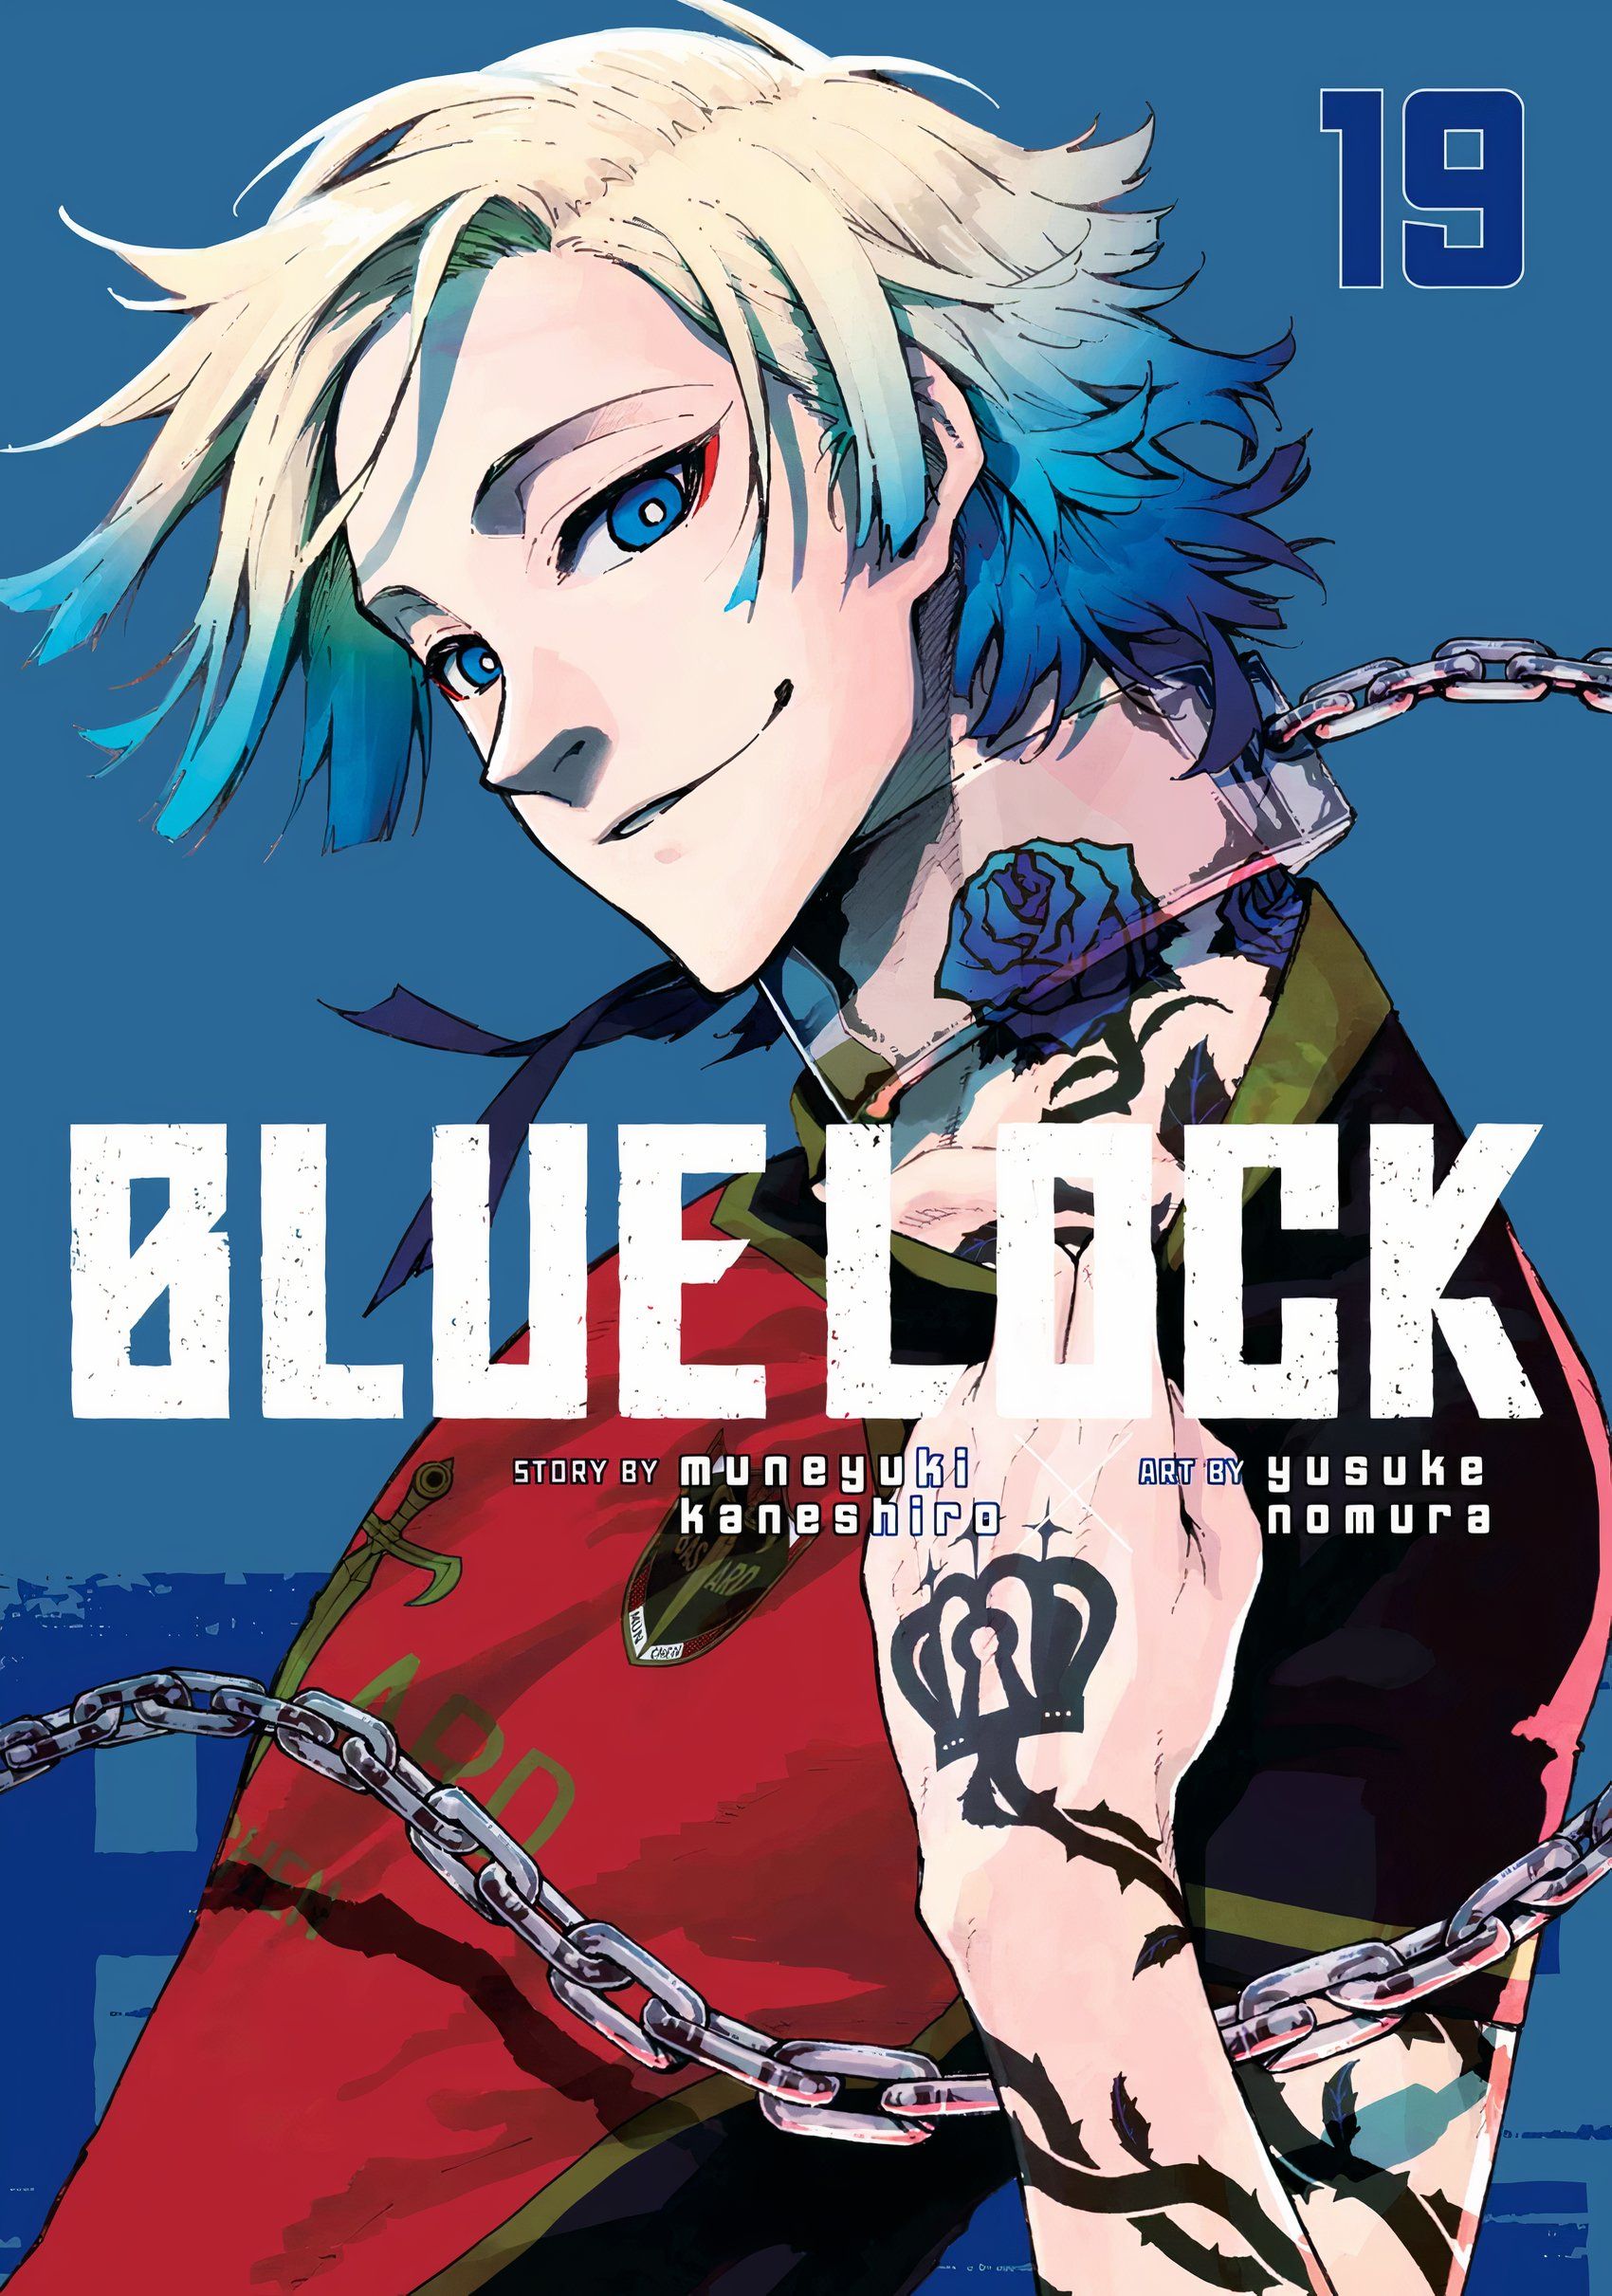 Michael Kaiser Volume #19 Blue Lock